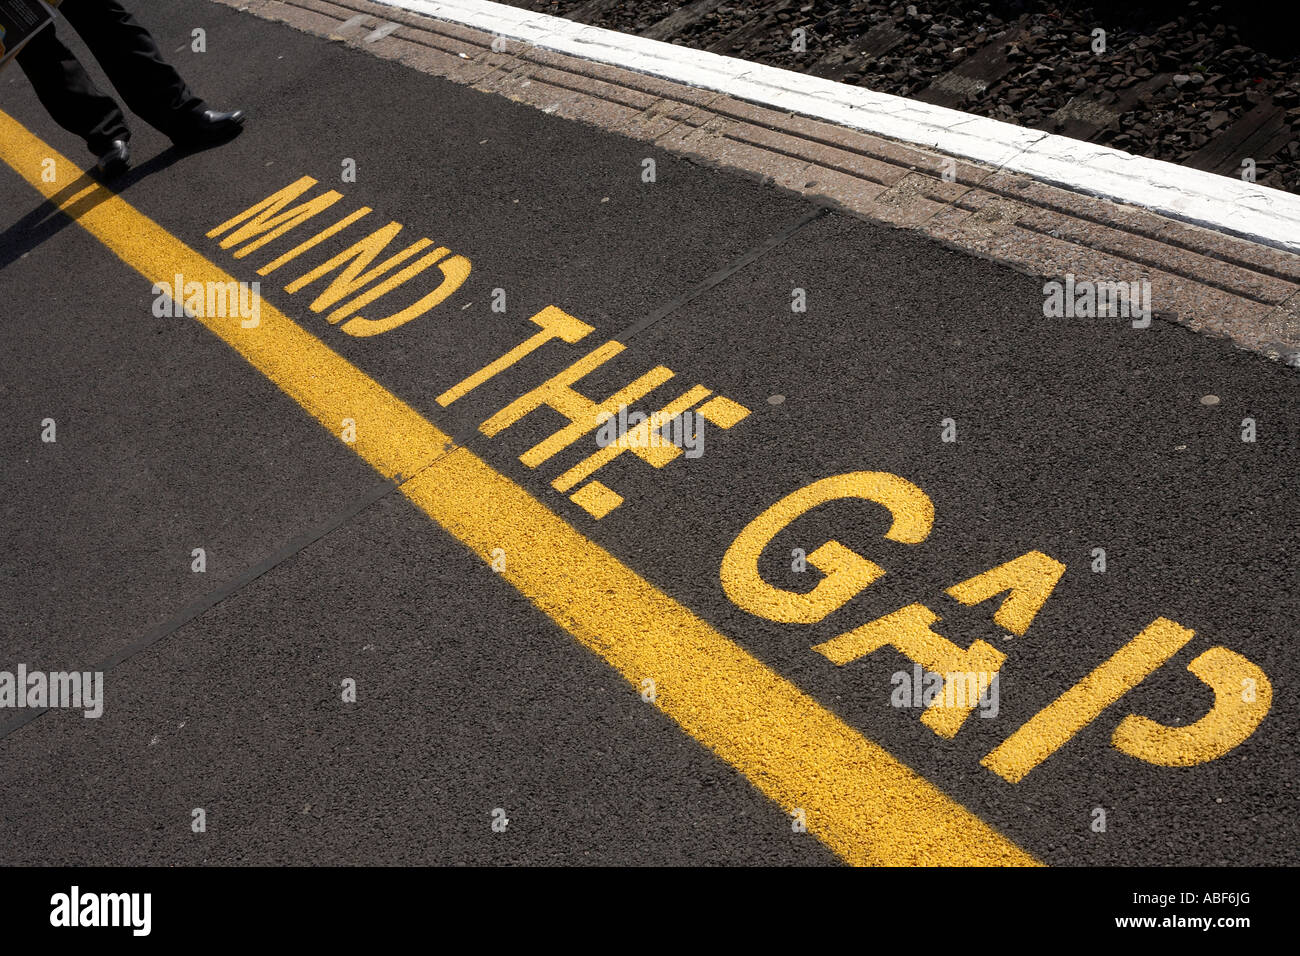 Die Worte Mind The Gap sind am Rande des neu angelegten Asphalt auf Plattformen an einer Station England Schablonen. Stockfoto